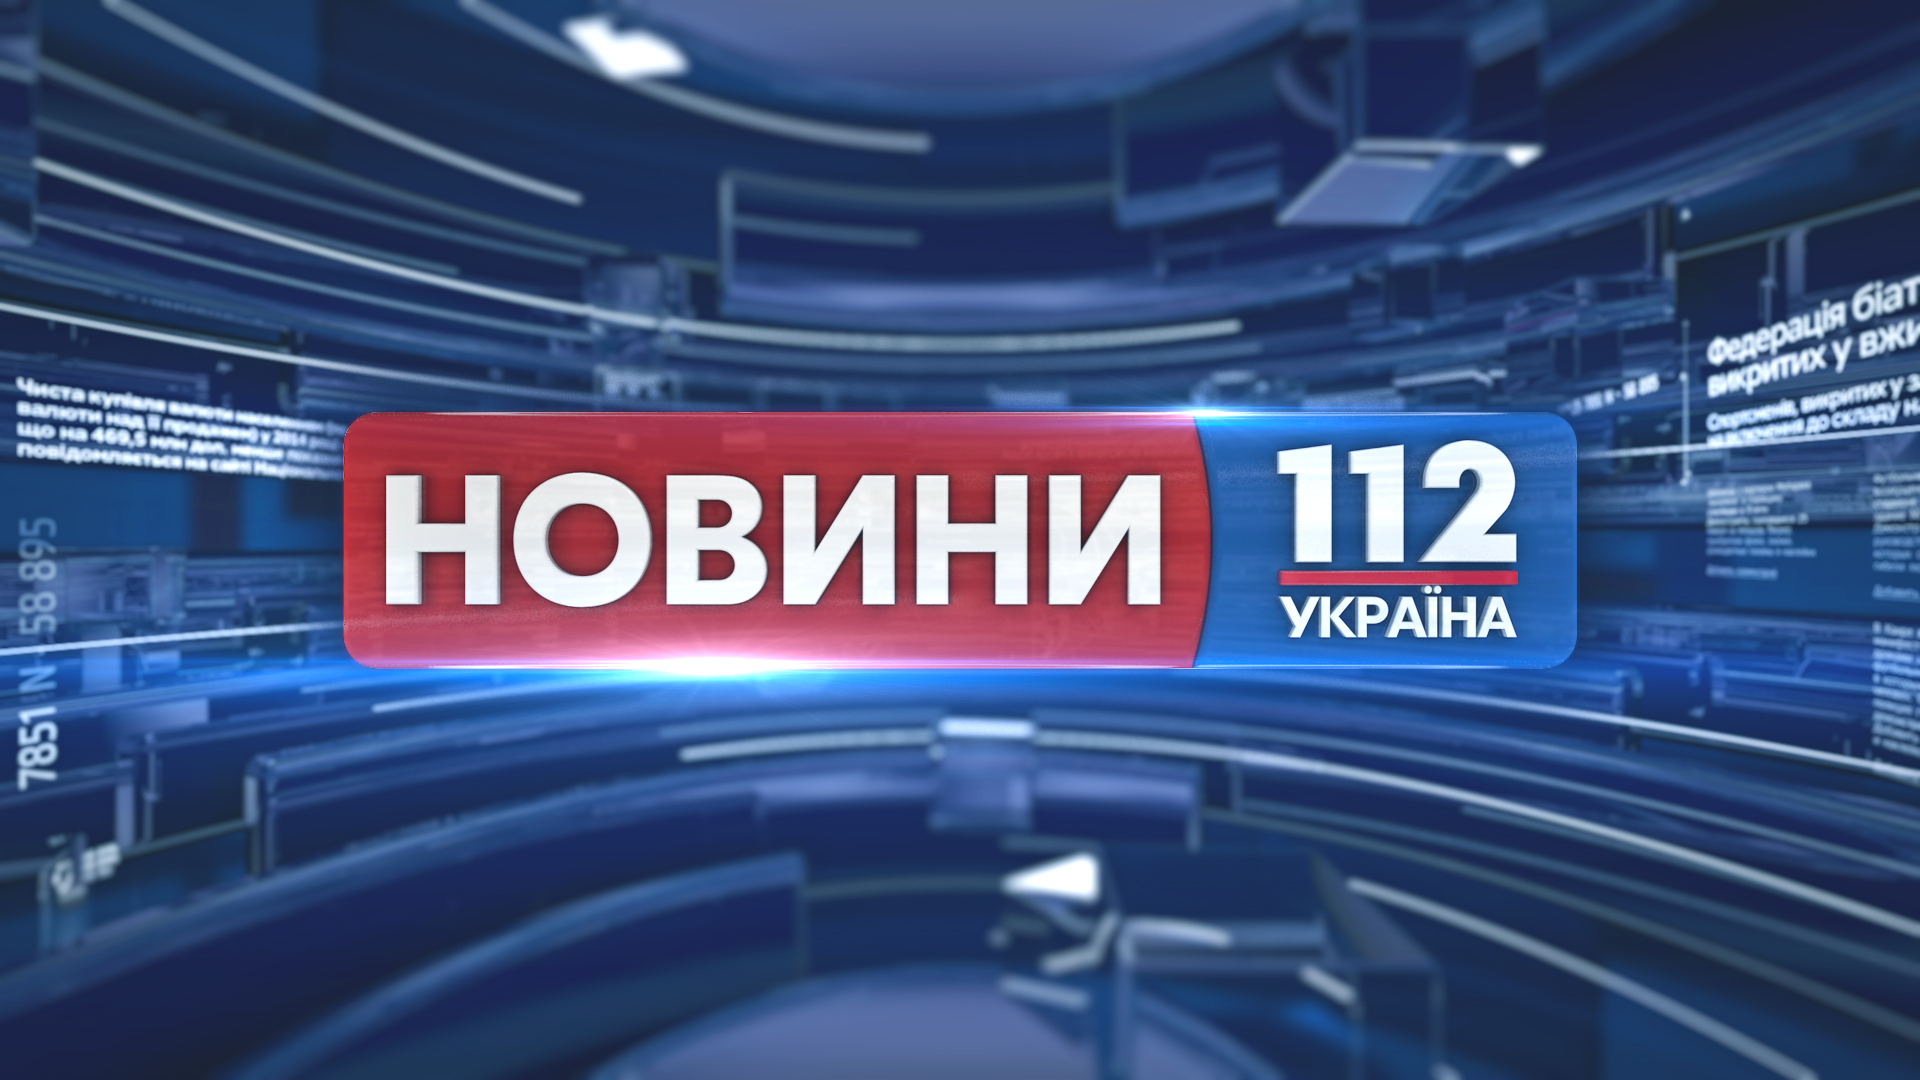 Украинское телевидение новости. 112 Украина. Телеканал 112. Телеканал Украина. Украинские новостные каналы.